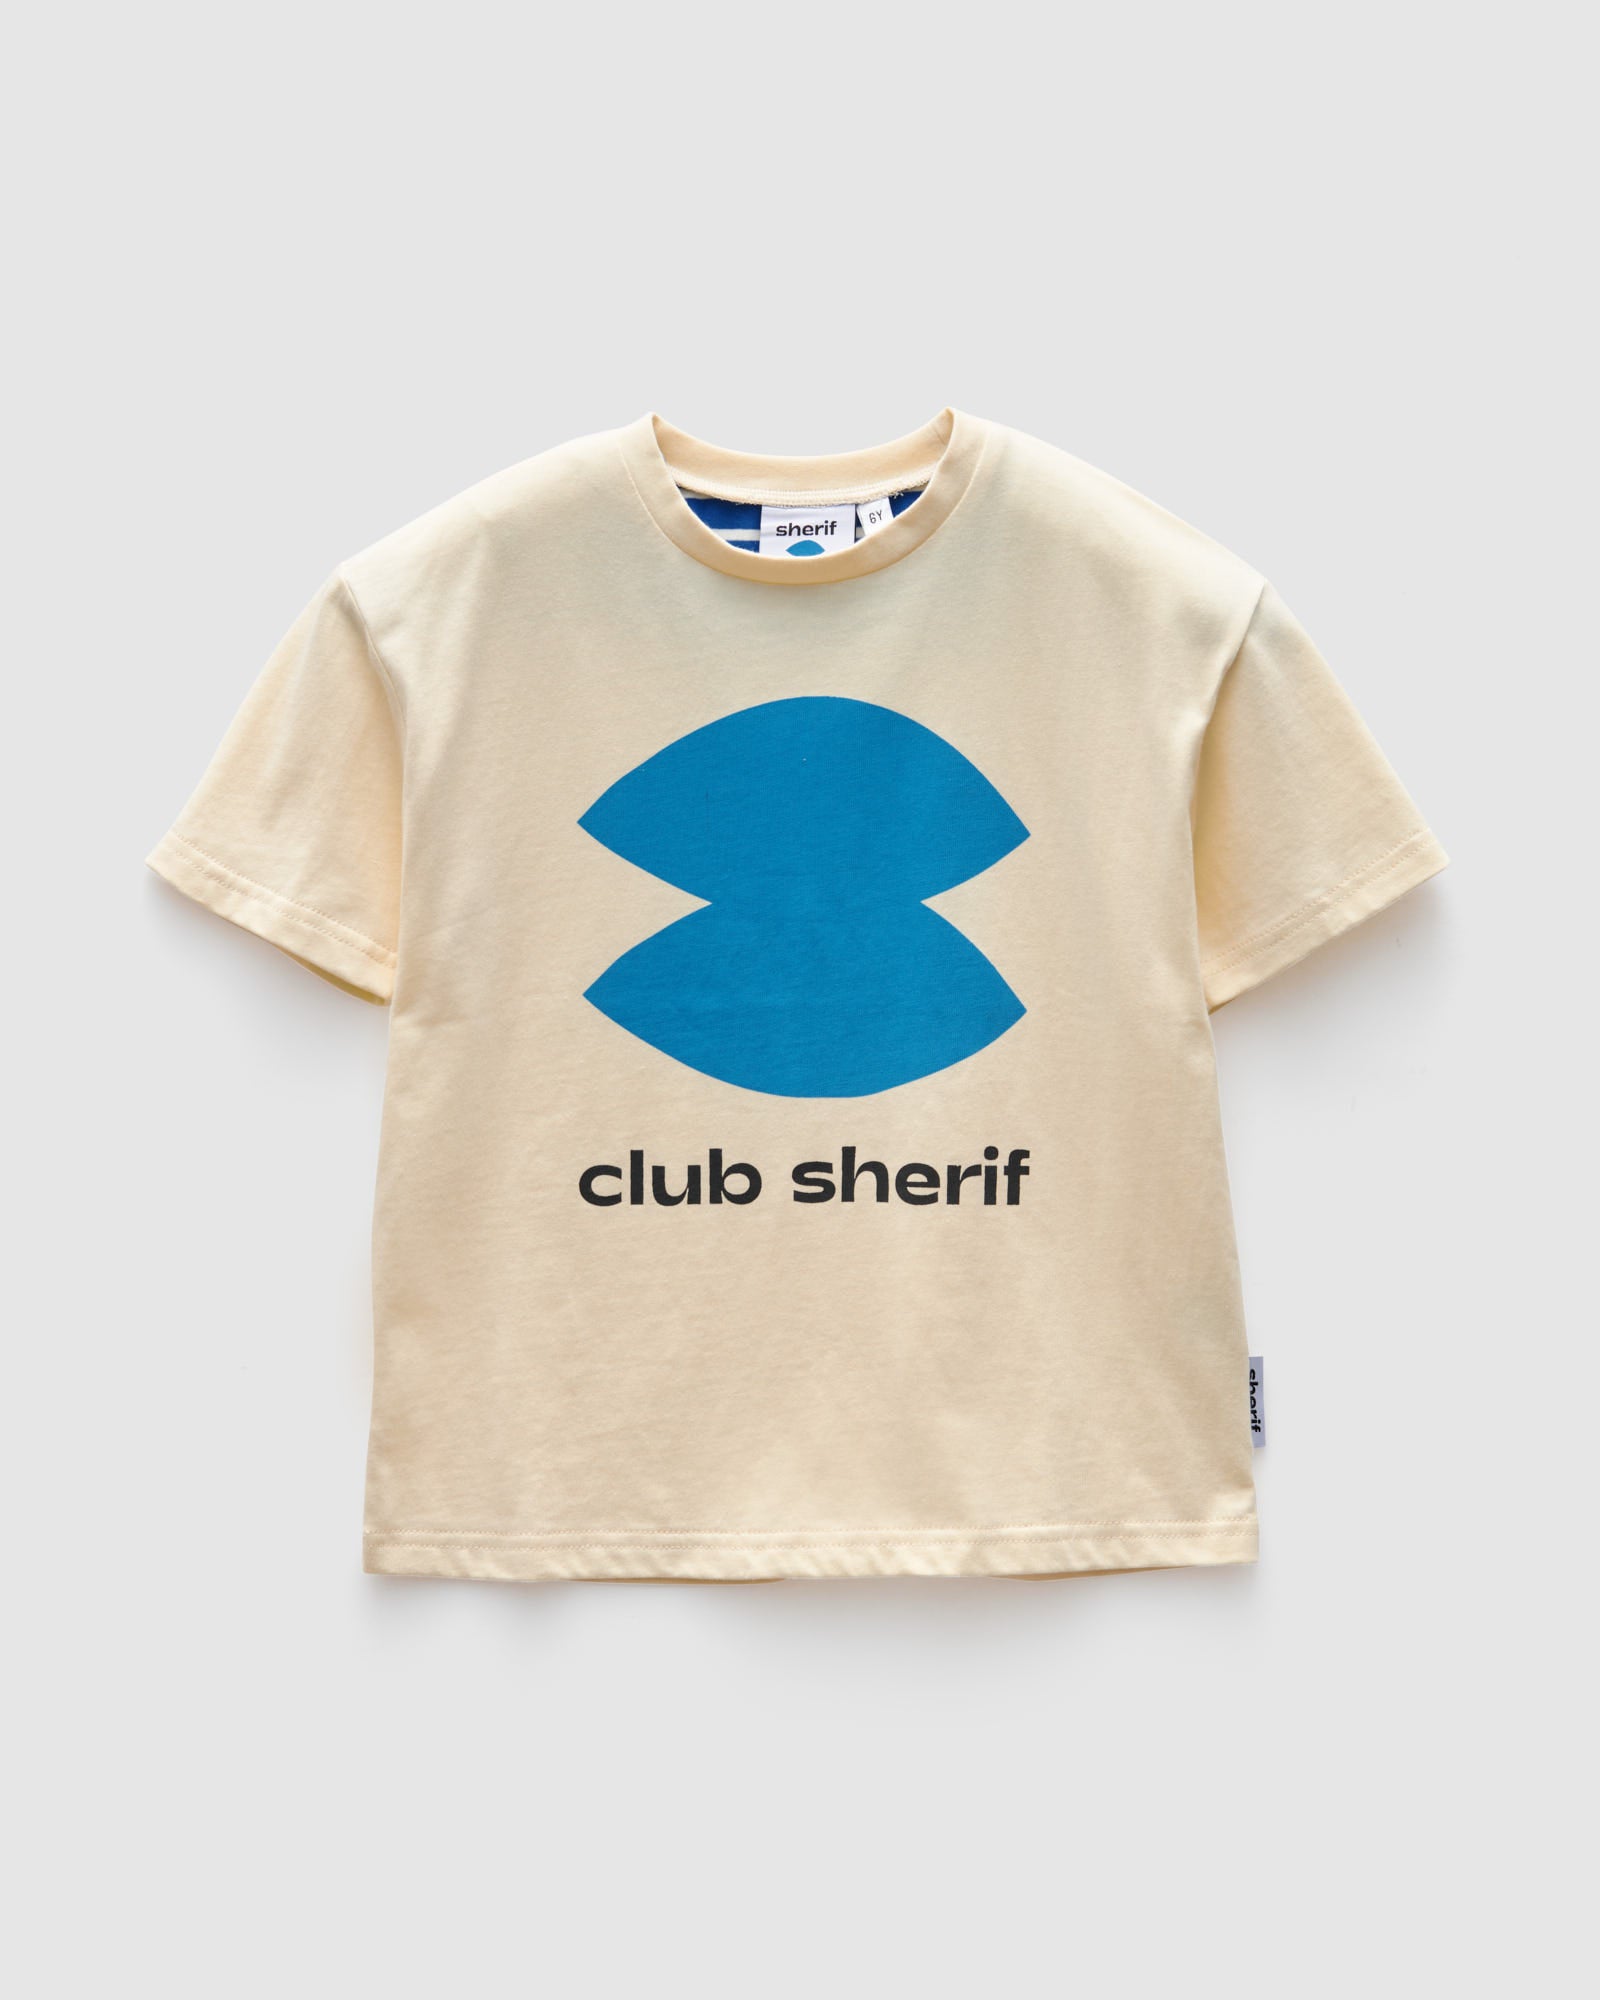 Sherif Club Sherif S/SL Tee - Oatmeal Marle